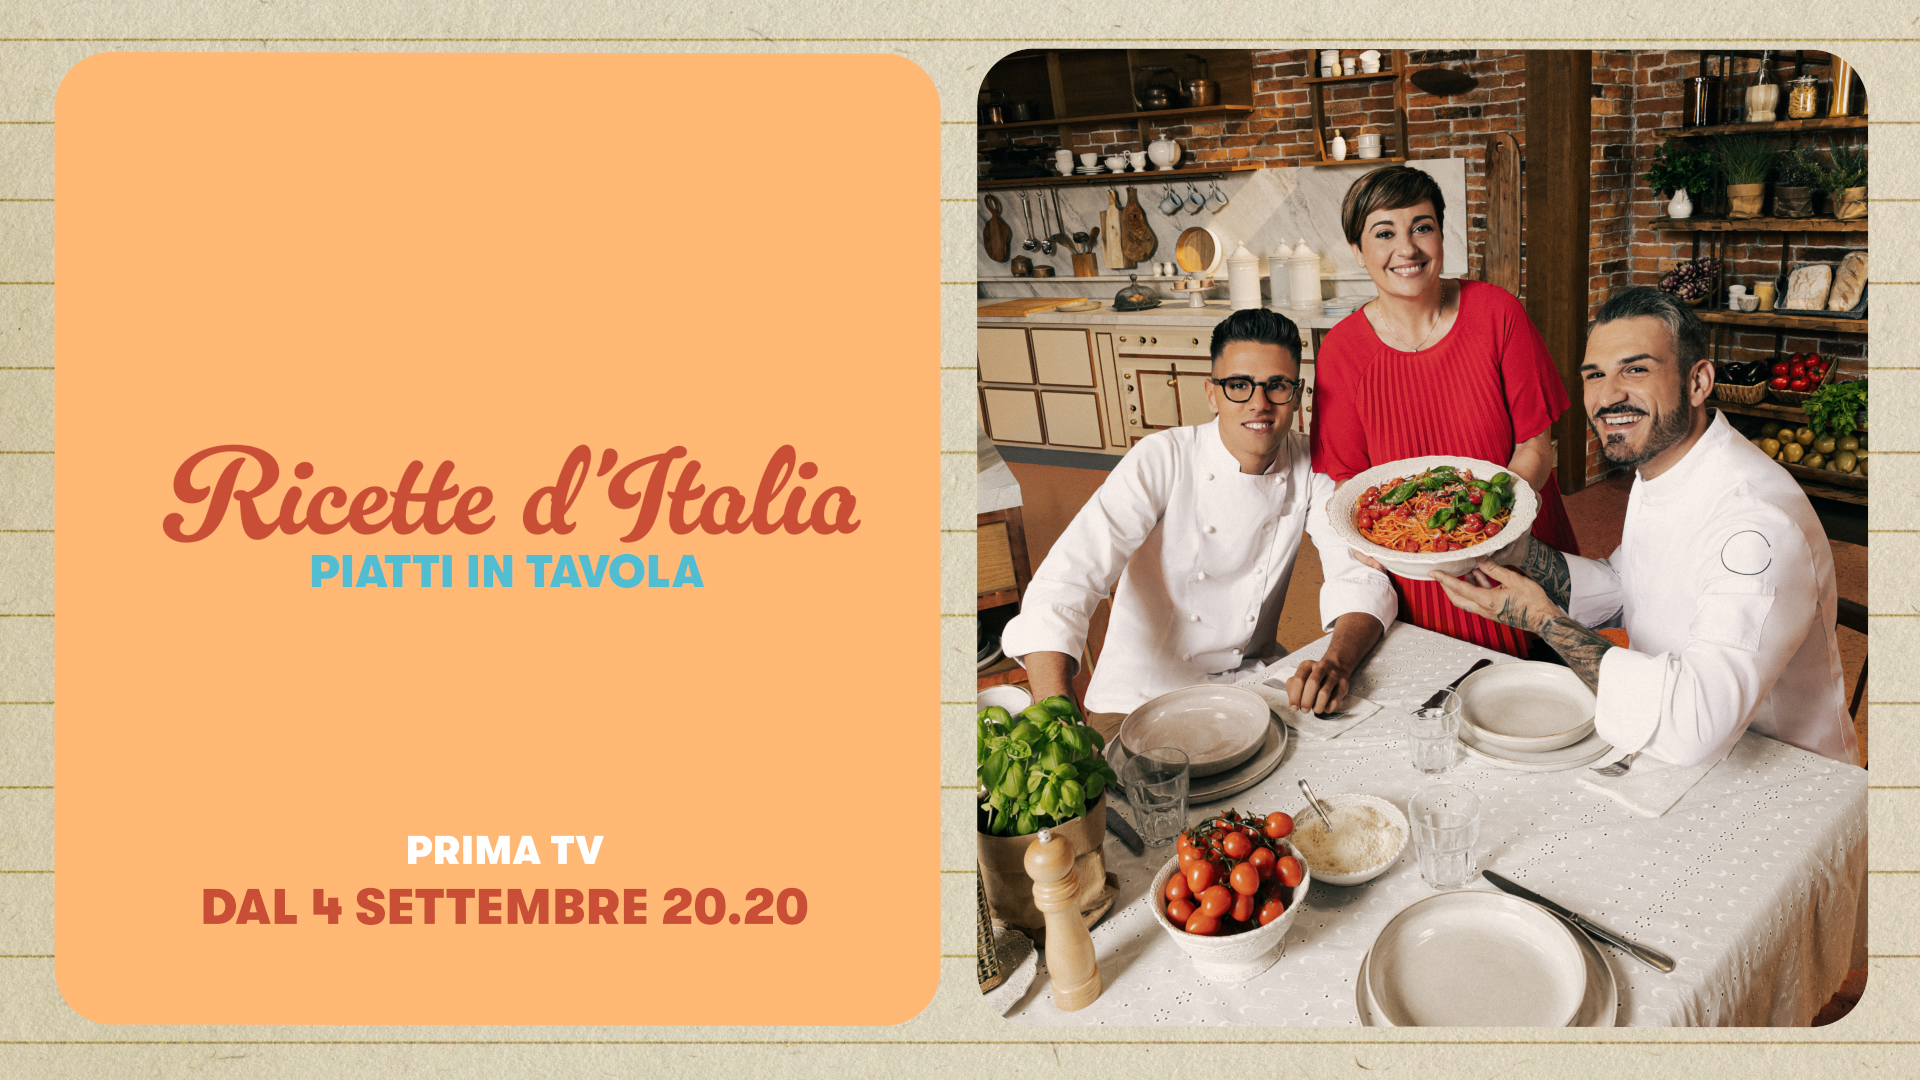 Ricette d'Italia_con grafica_4.png